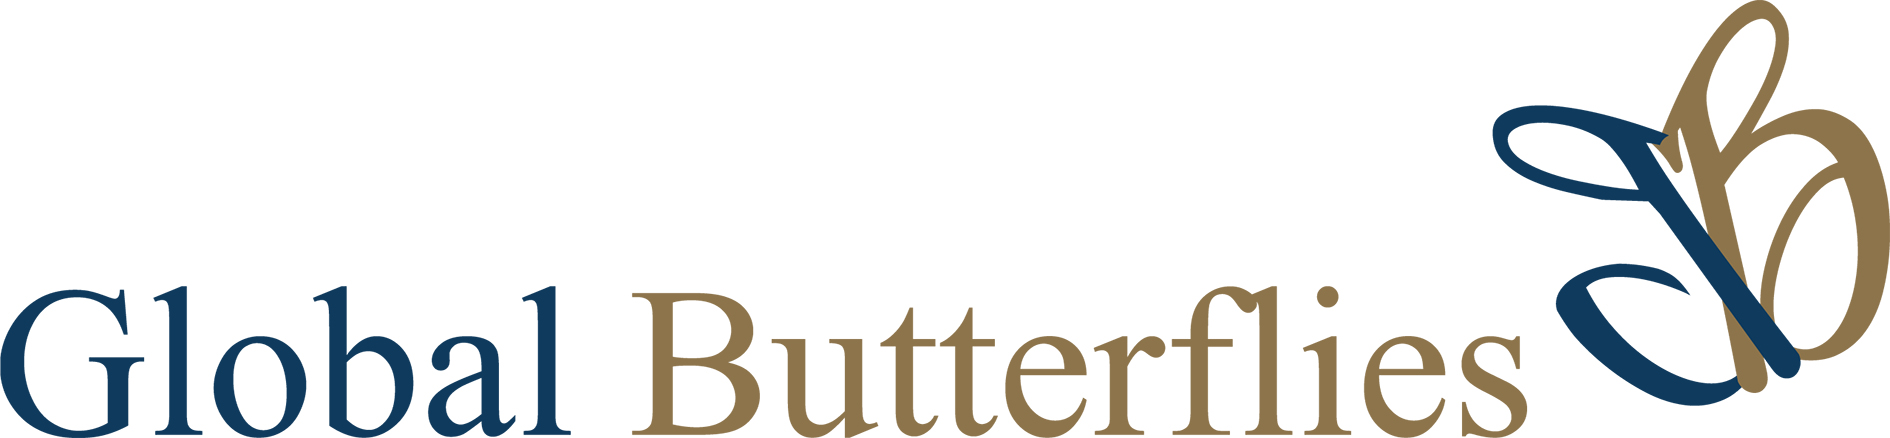 Global Butterflies logo